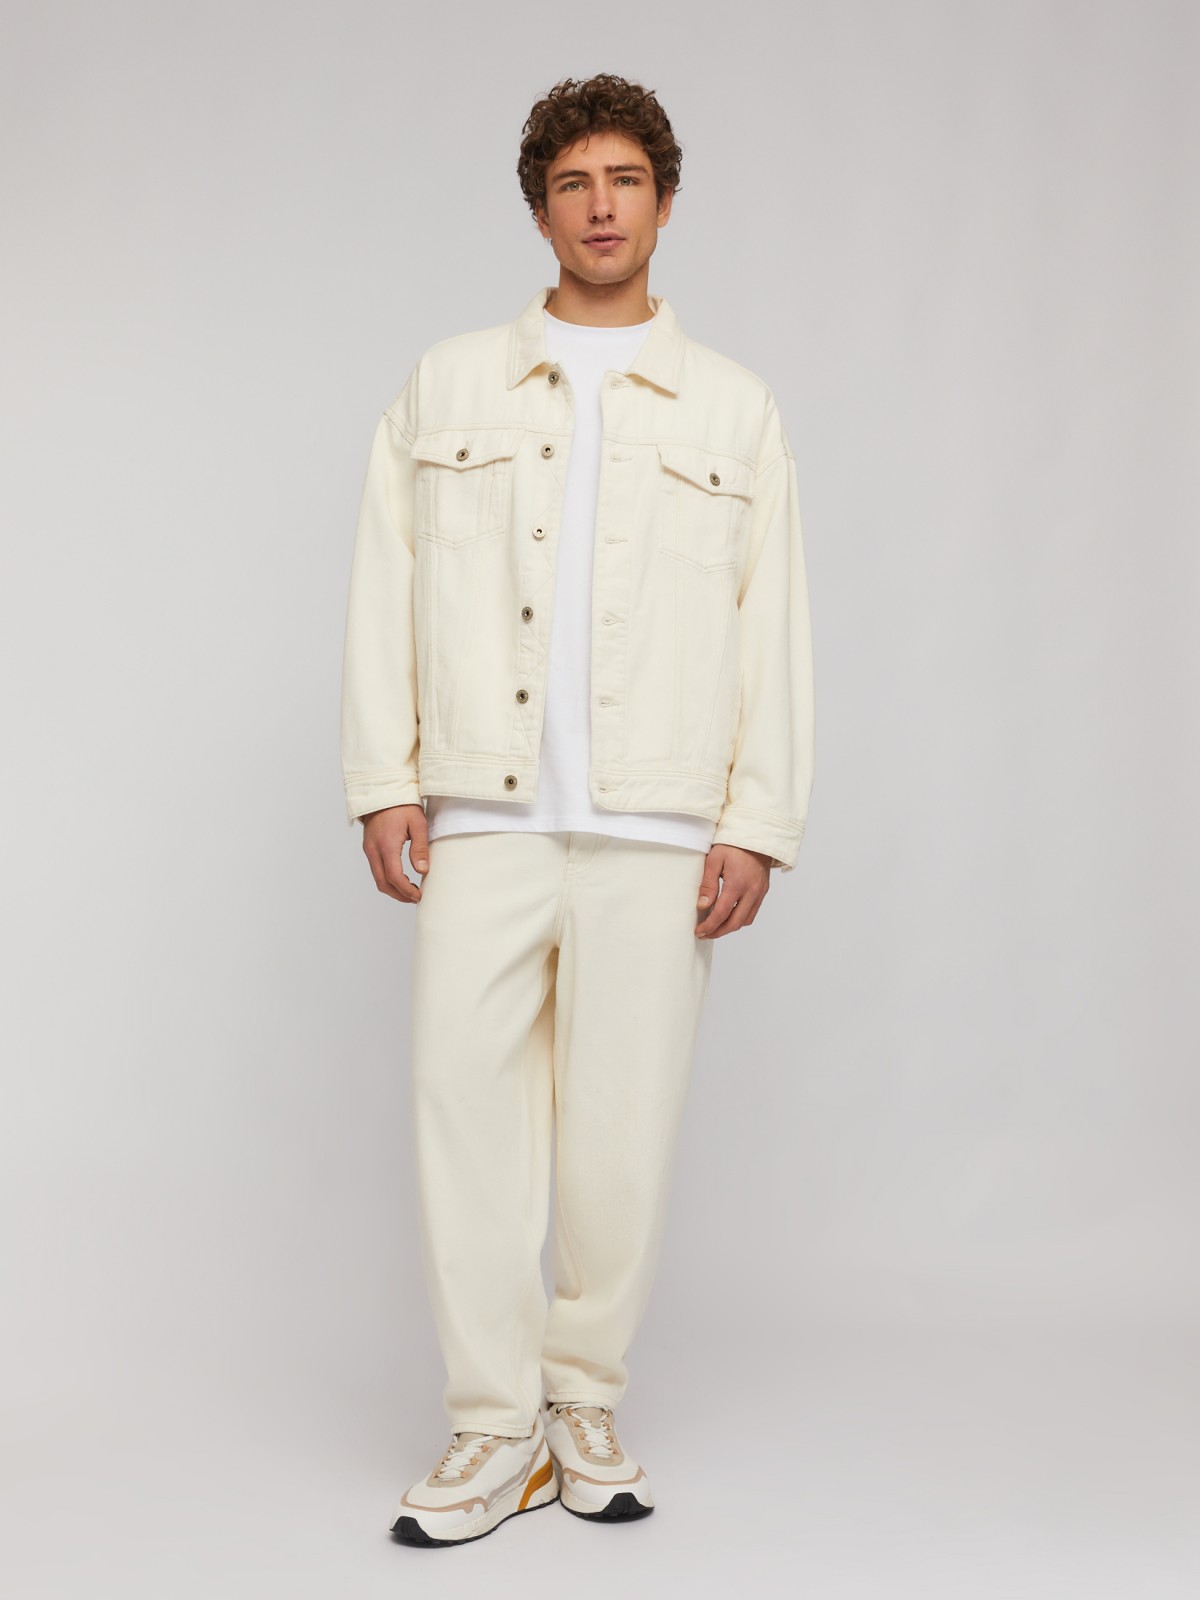 Джинсовая куртка-рубашка из хлопка свободного фасона zolla 214225D5Y021, цвет бежевый, размер S - фото 2